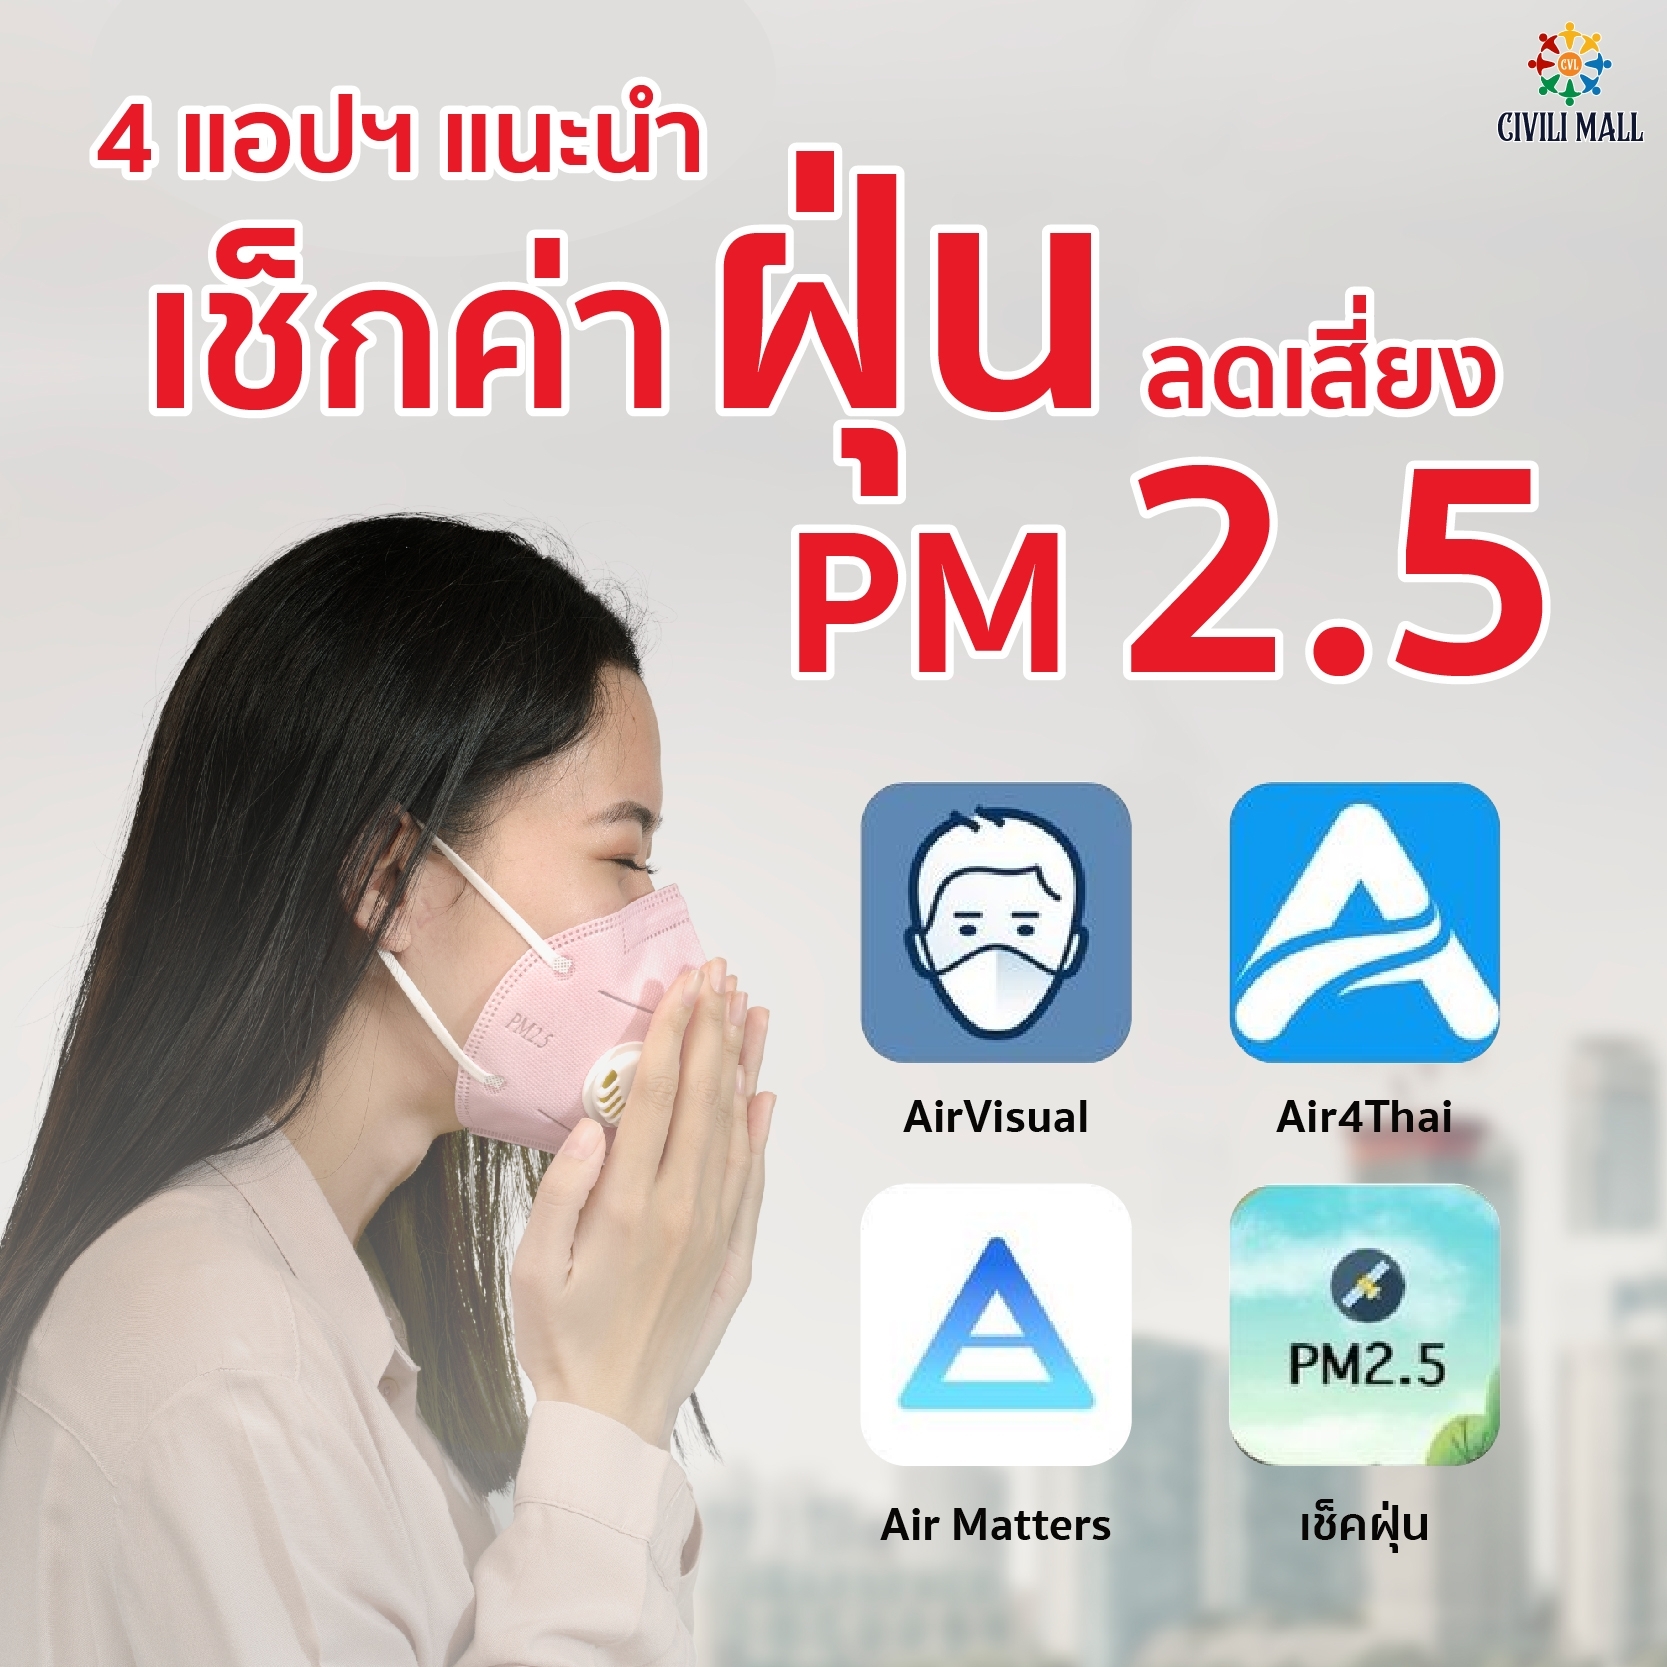 📲 มีไว้ได้ใช้ชัวร์ 4 แอปพลิเคชันเช็กฝุ่น PM 2.5 ก่อนเดินทาง